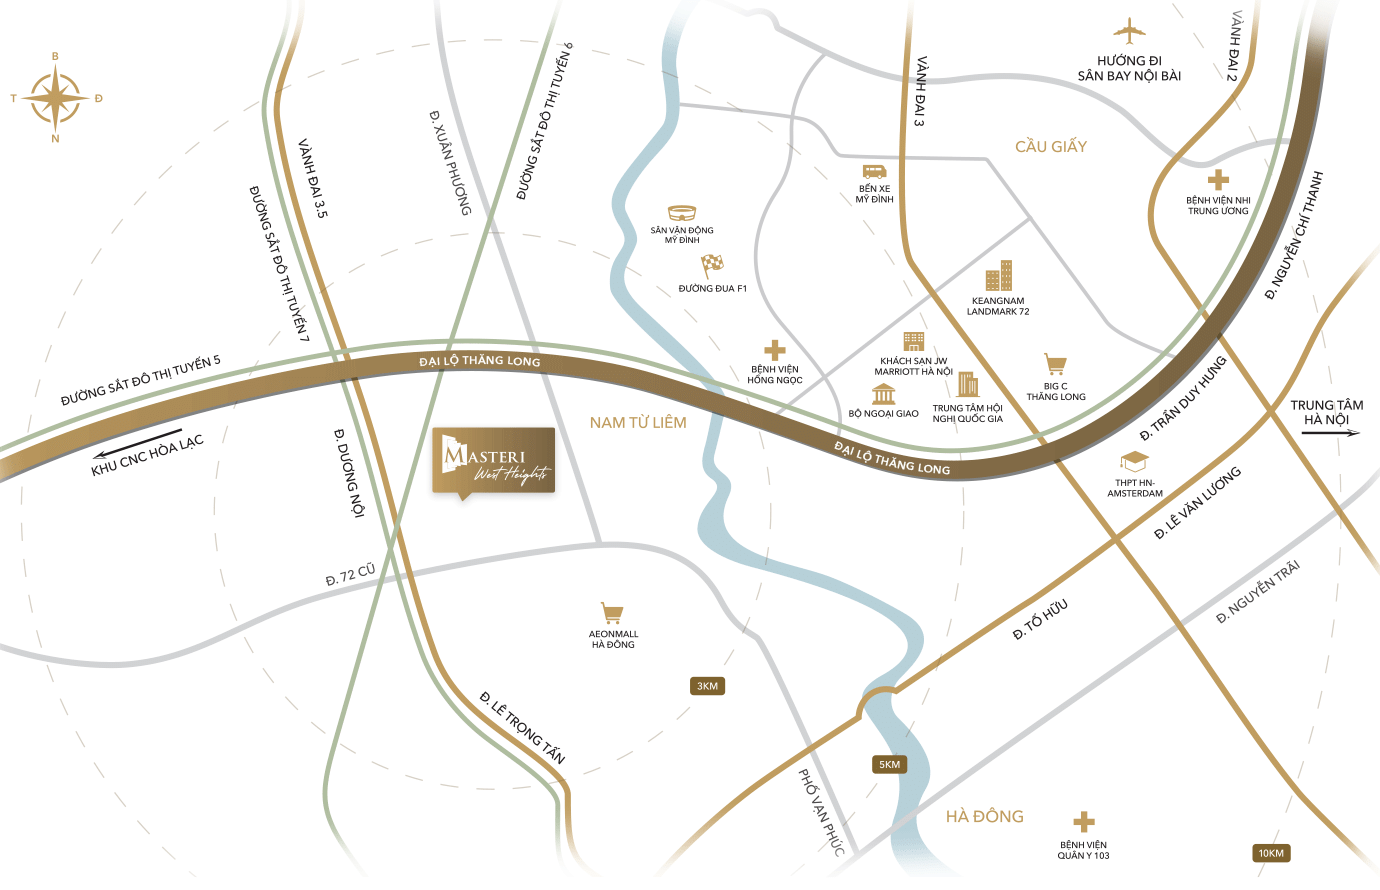 EXTERNAL MAP